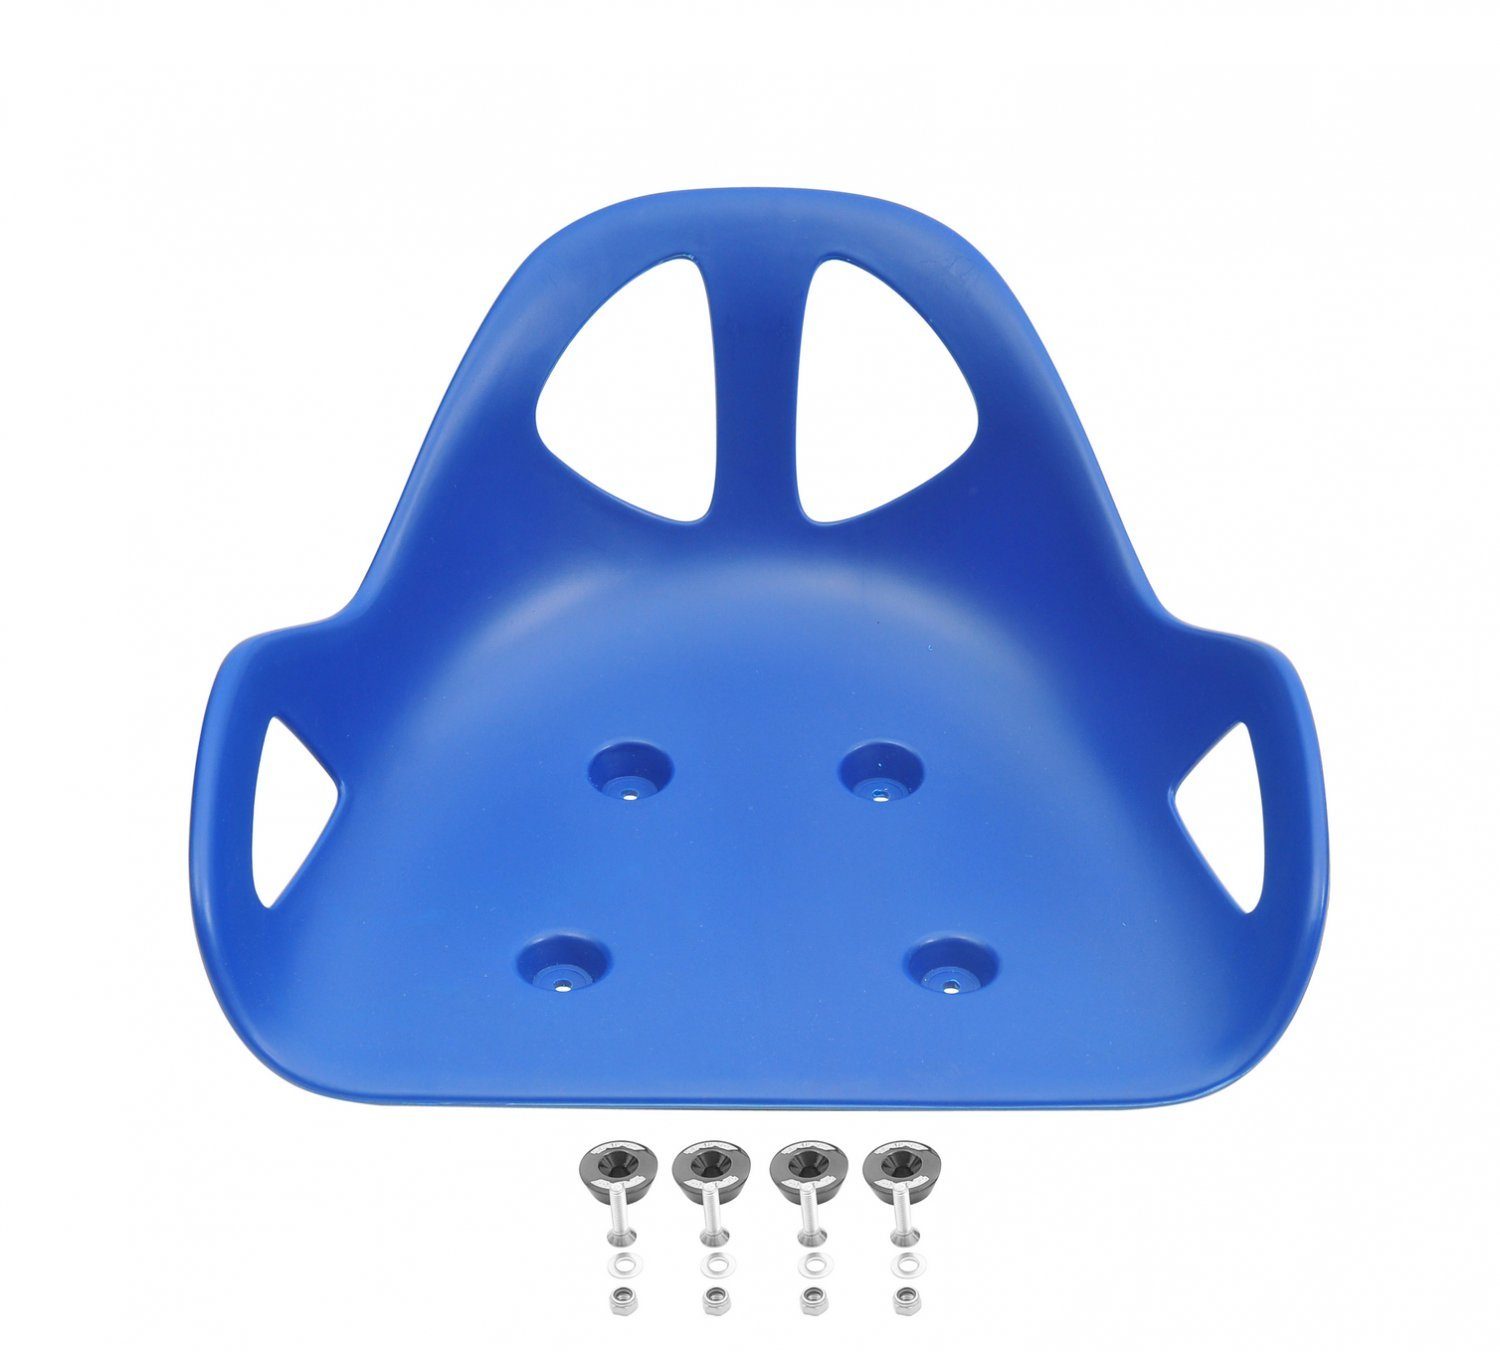 Triad Erwachsenendreirad Drift Trike Sitz inkl. Alucaps zur Befestigung, Kunststoffsitz mit 4 Befestigungscaps blau